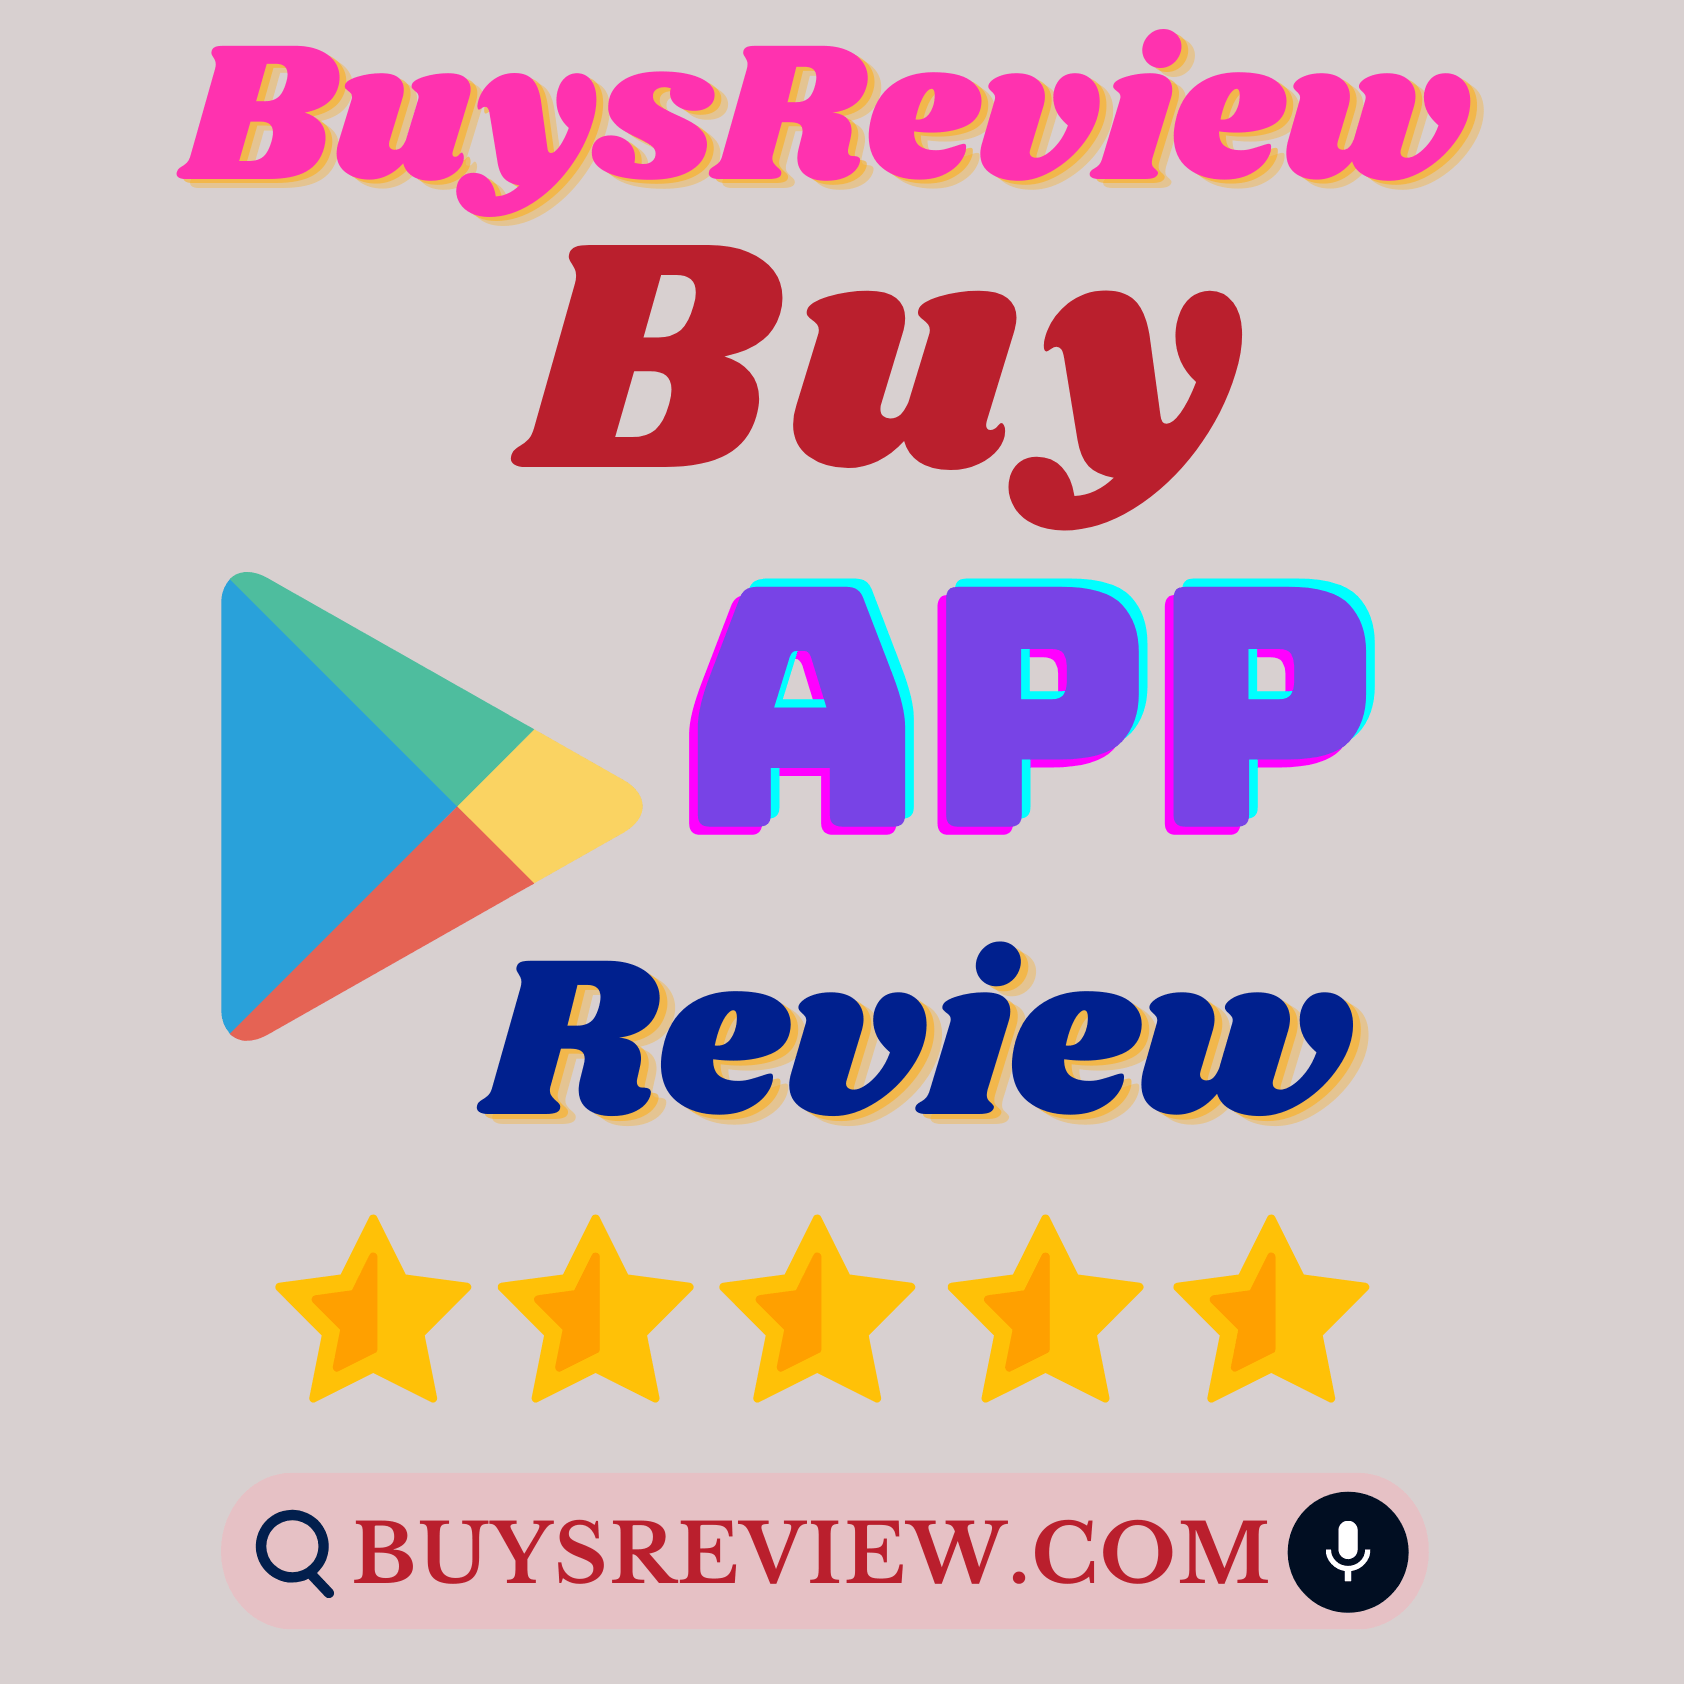 Buy Google App Reviews